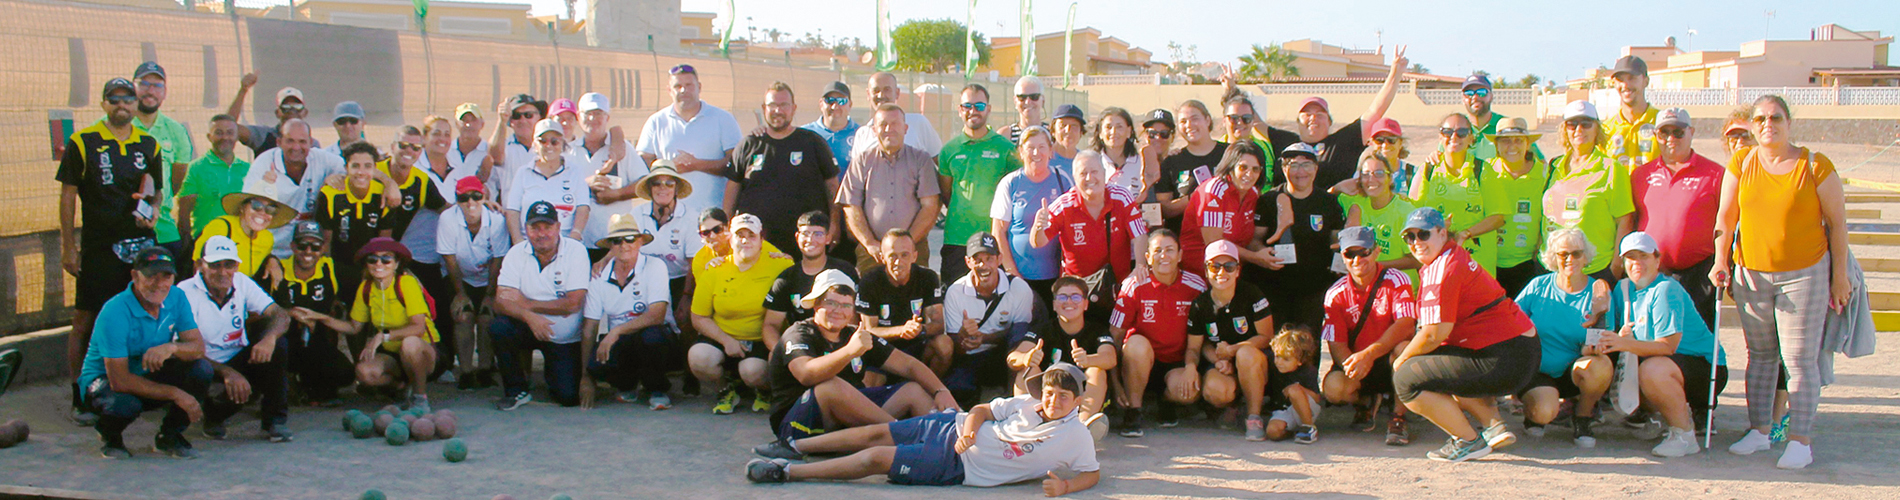 Der Erfolg des II. Turniers für kanarisches Boccia stärkt die Verbindung zwischen den Mannschaften aus Fuerteventura und Lanzarote